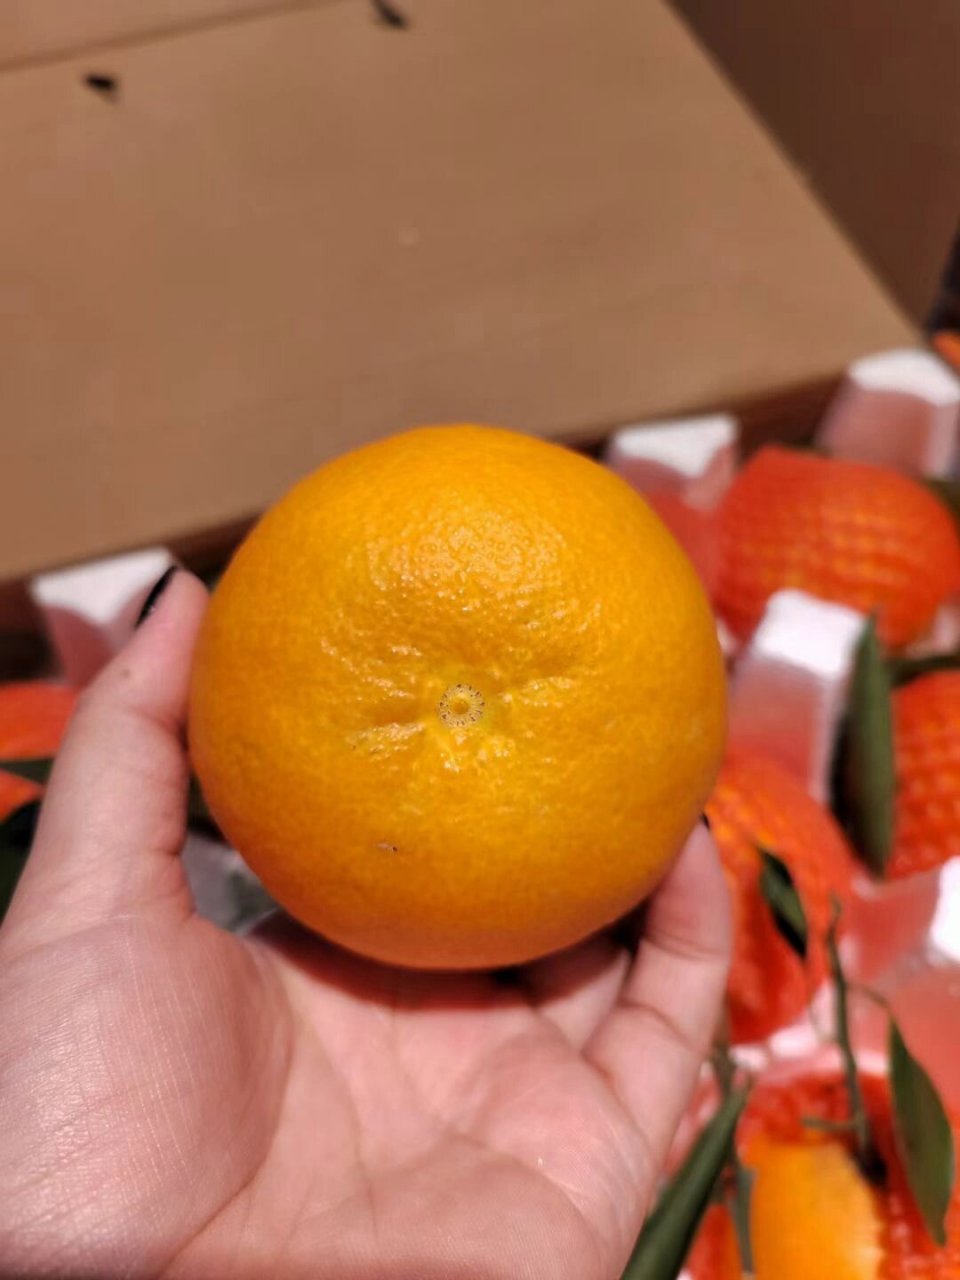 爱媛14号柑橘品种图片